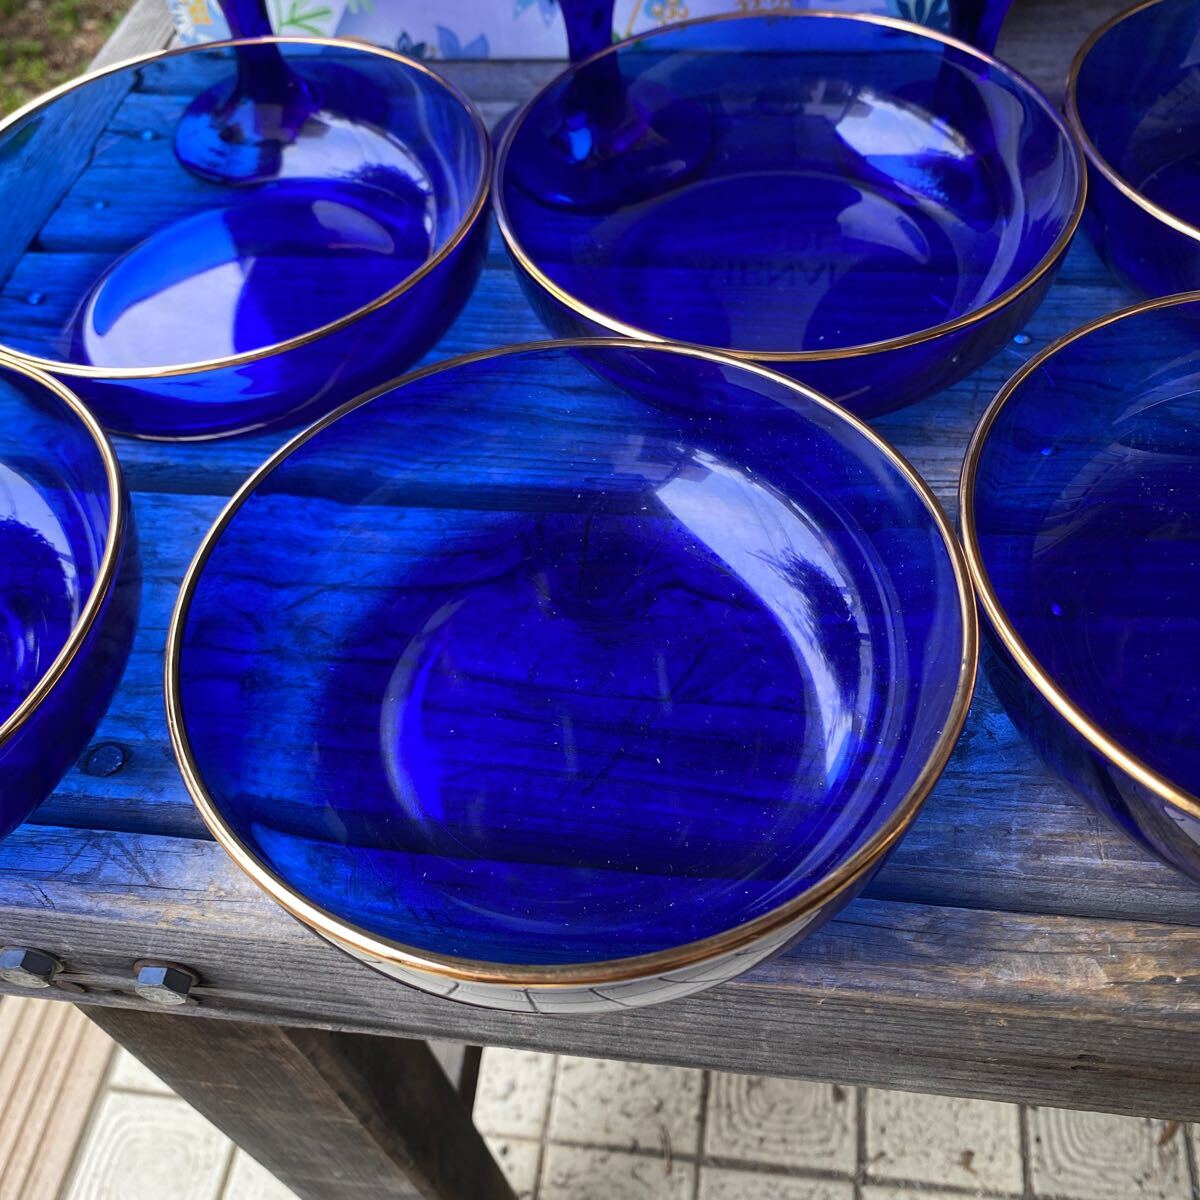 メナード ノベルティ 脚付グラス ガラスプレート 合計11点セット ブルー 青 ガラスボウル 鉢 グラス 洋食器 未使用 半透明 nbの画像2